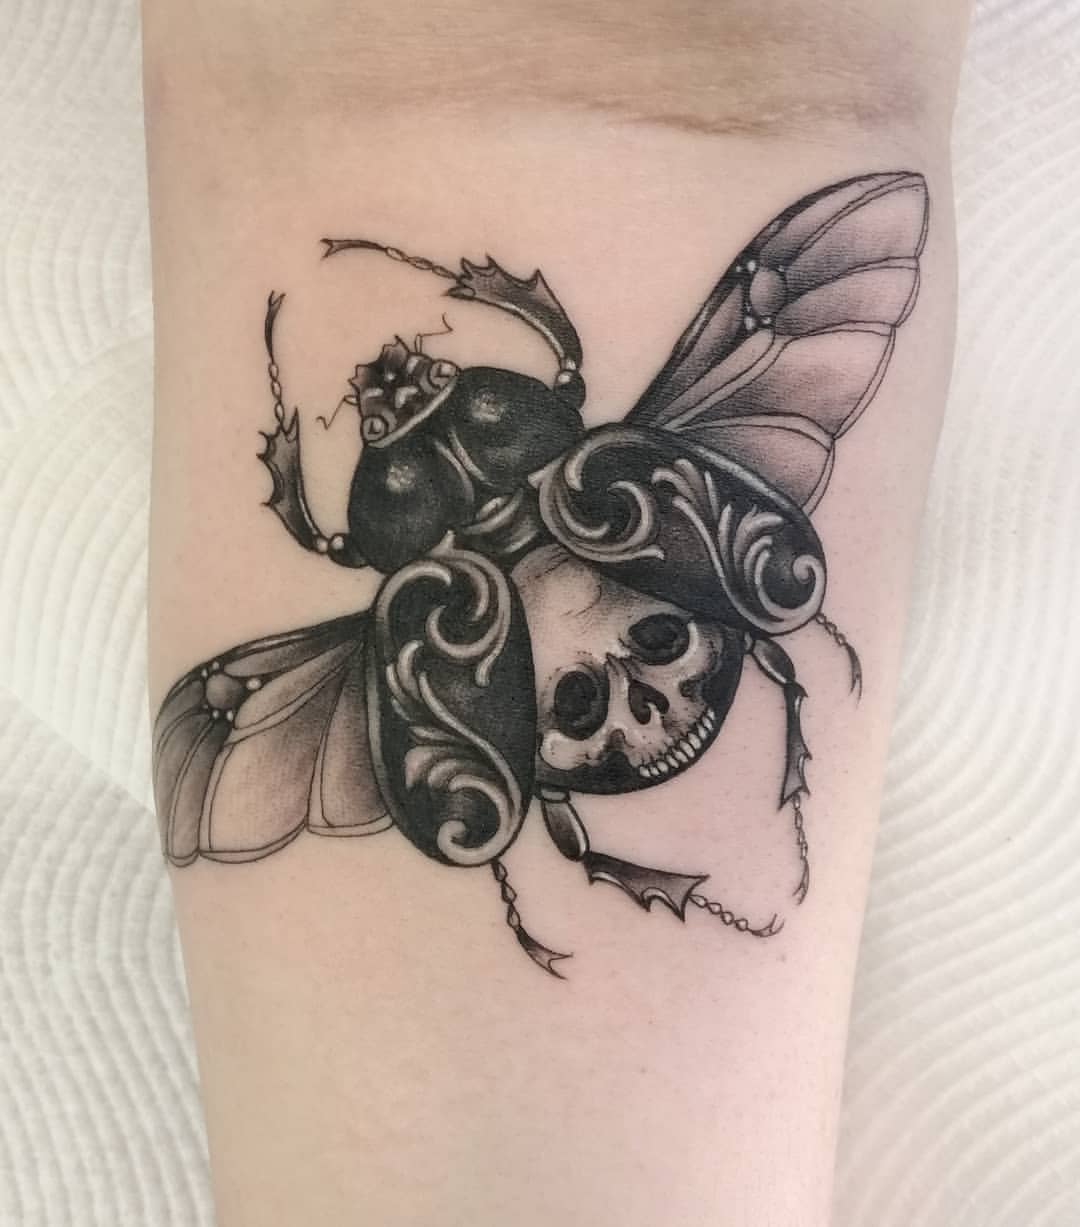 Scarab/Beetle Tattoo Ideas 2